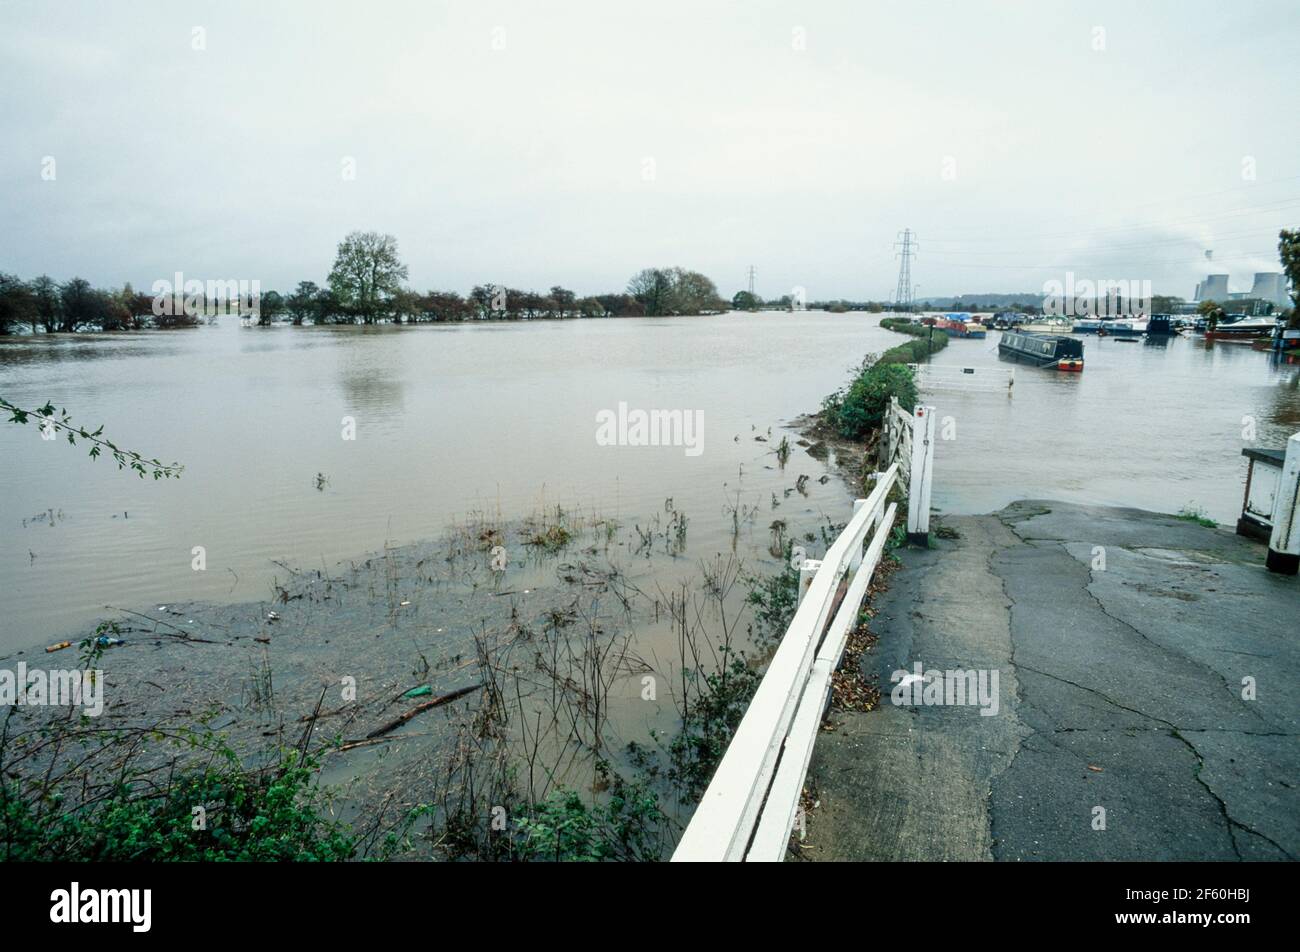 2000 Sawley - inondations causées par des précipitations prolongées en octobre et novembre 2000. Au-dessus du pont Harrington à Sawley, le chantier de briques Marshalls et la maison publique Plank et Leggit ont perdu des affaires car la route a été fermée en raison de graves inondations. Les écluses ici sur la rivière Trent à la marina de Sawley ont été submergées par les eaux d'inondation et le canal a débordé ses berges. Les bateaux étroits flottent à peine dans les limites du canal. La route B6540 Tamworth a été fermée à la circulation à ce point.Sawley marina, Sawley, Derbyshire, Angleterre, Royaume-Uni, GB, Europe Banque D'Images